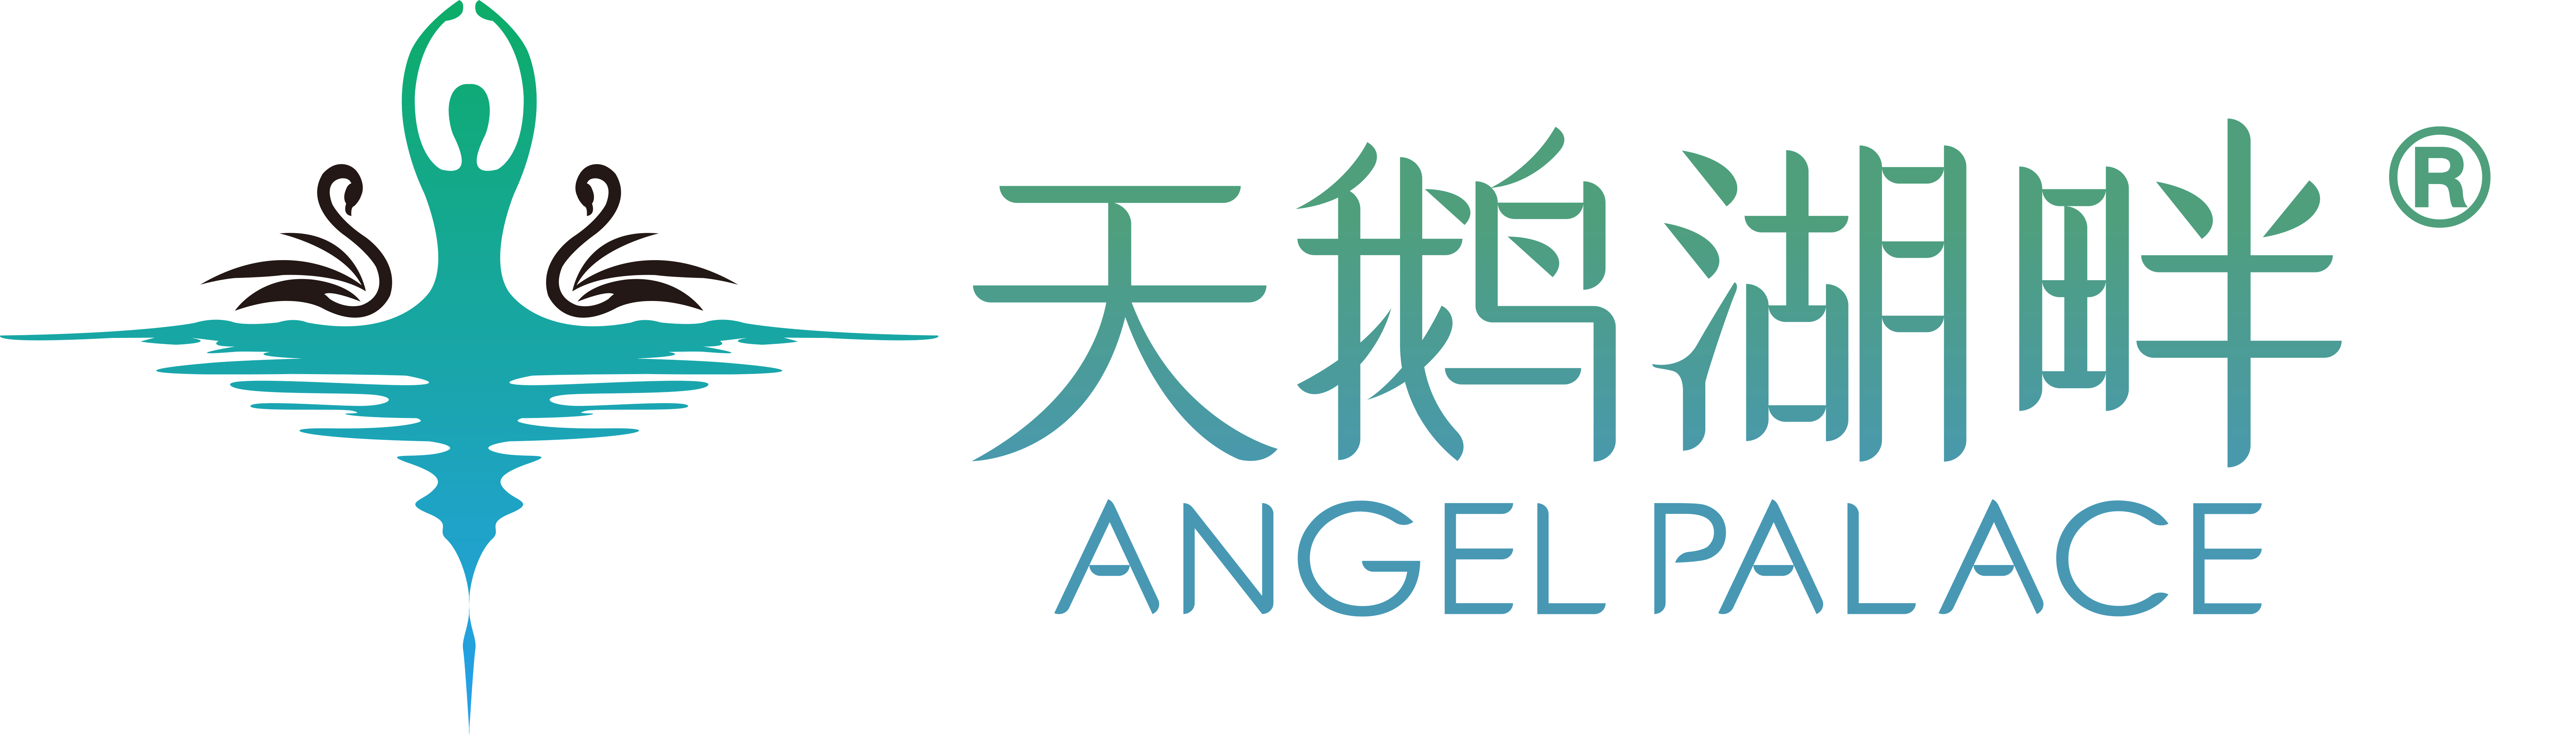 天鹅湖畔logo